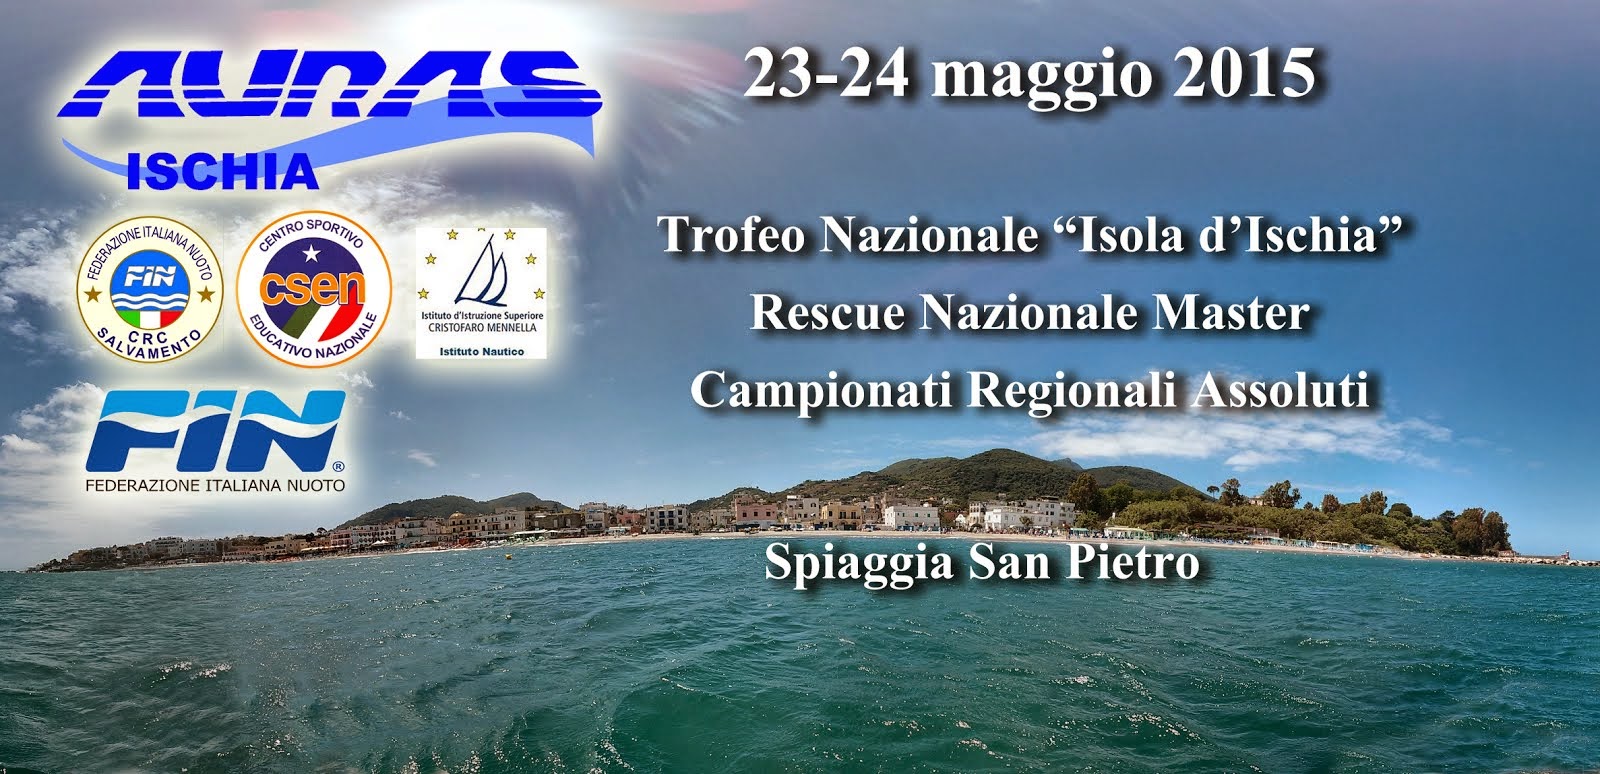 Trofeo Nazionale "Isola d'Ischia"